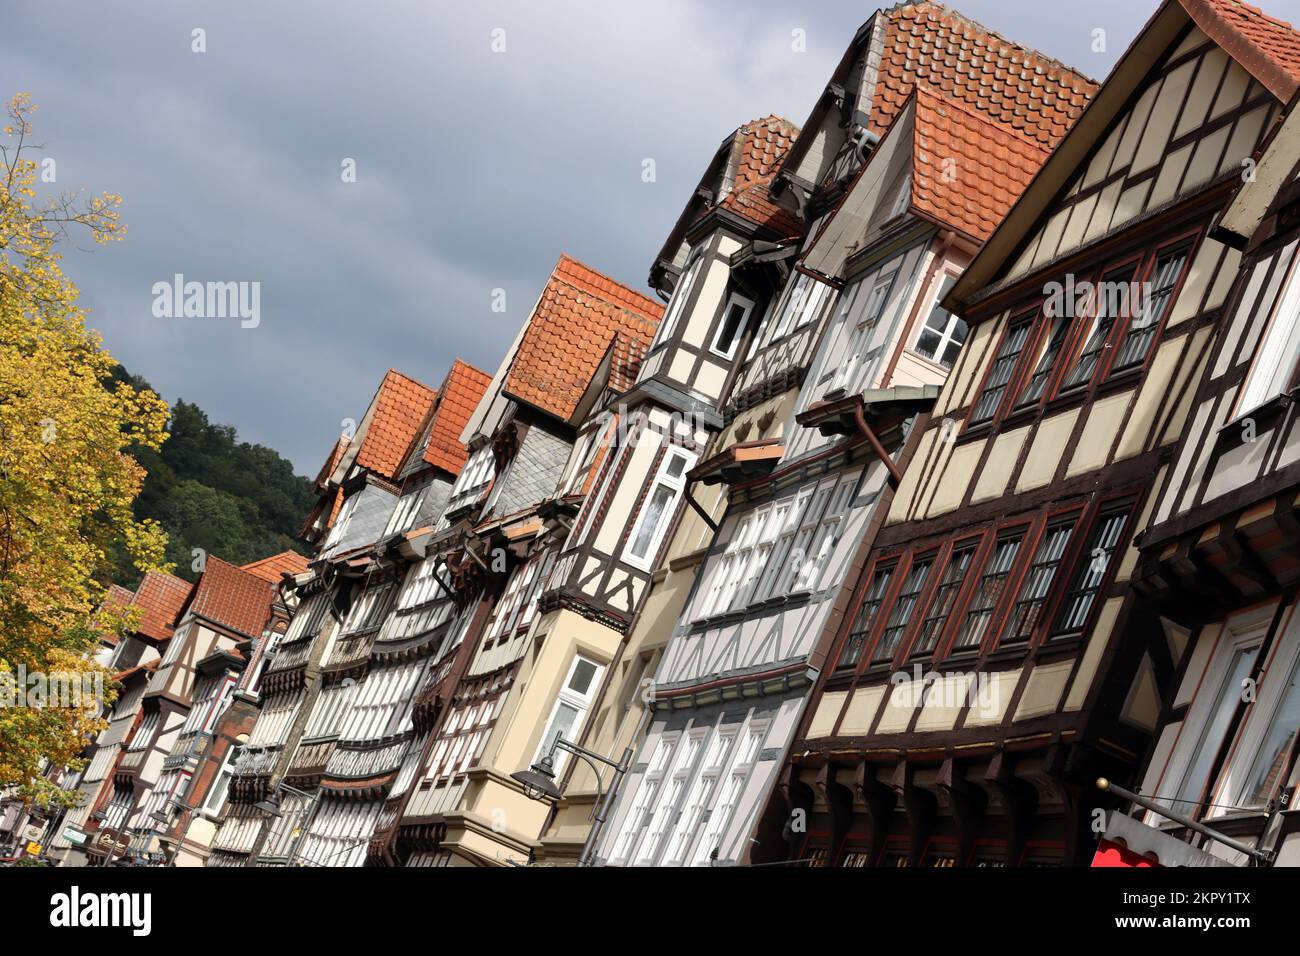 Fachwerkensemble in der historischen Altstadt, Niedersachsen, Deutschland, Hannoversch Münden Stock Photo